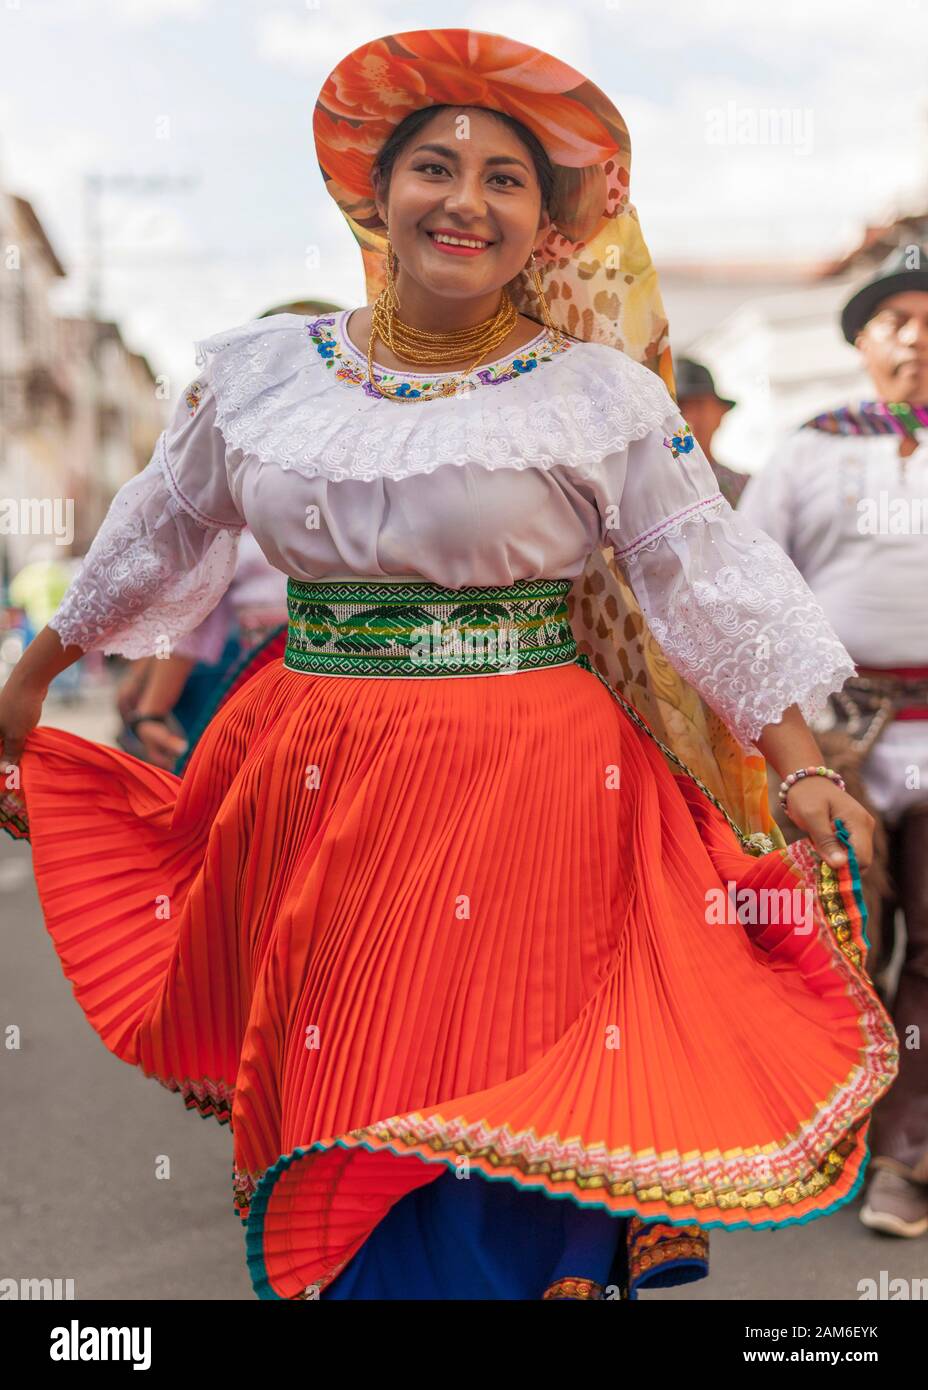 Teilnehmer an einem Straßenfest im neuen Jahr in Riobamba, Ecuador. Stockfoto